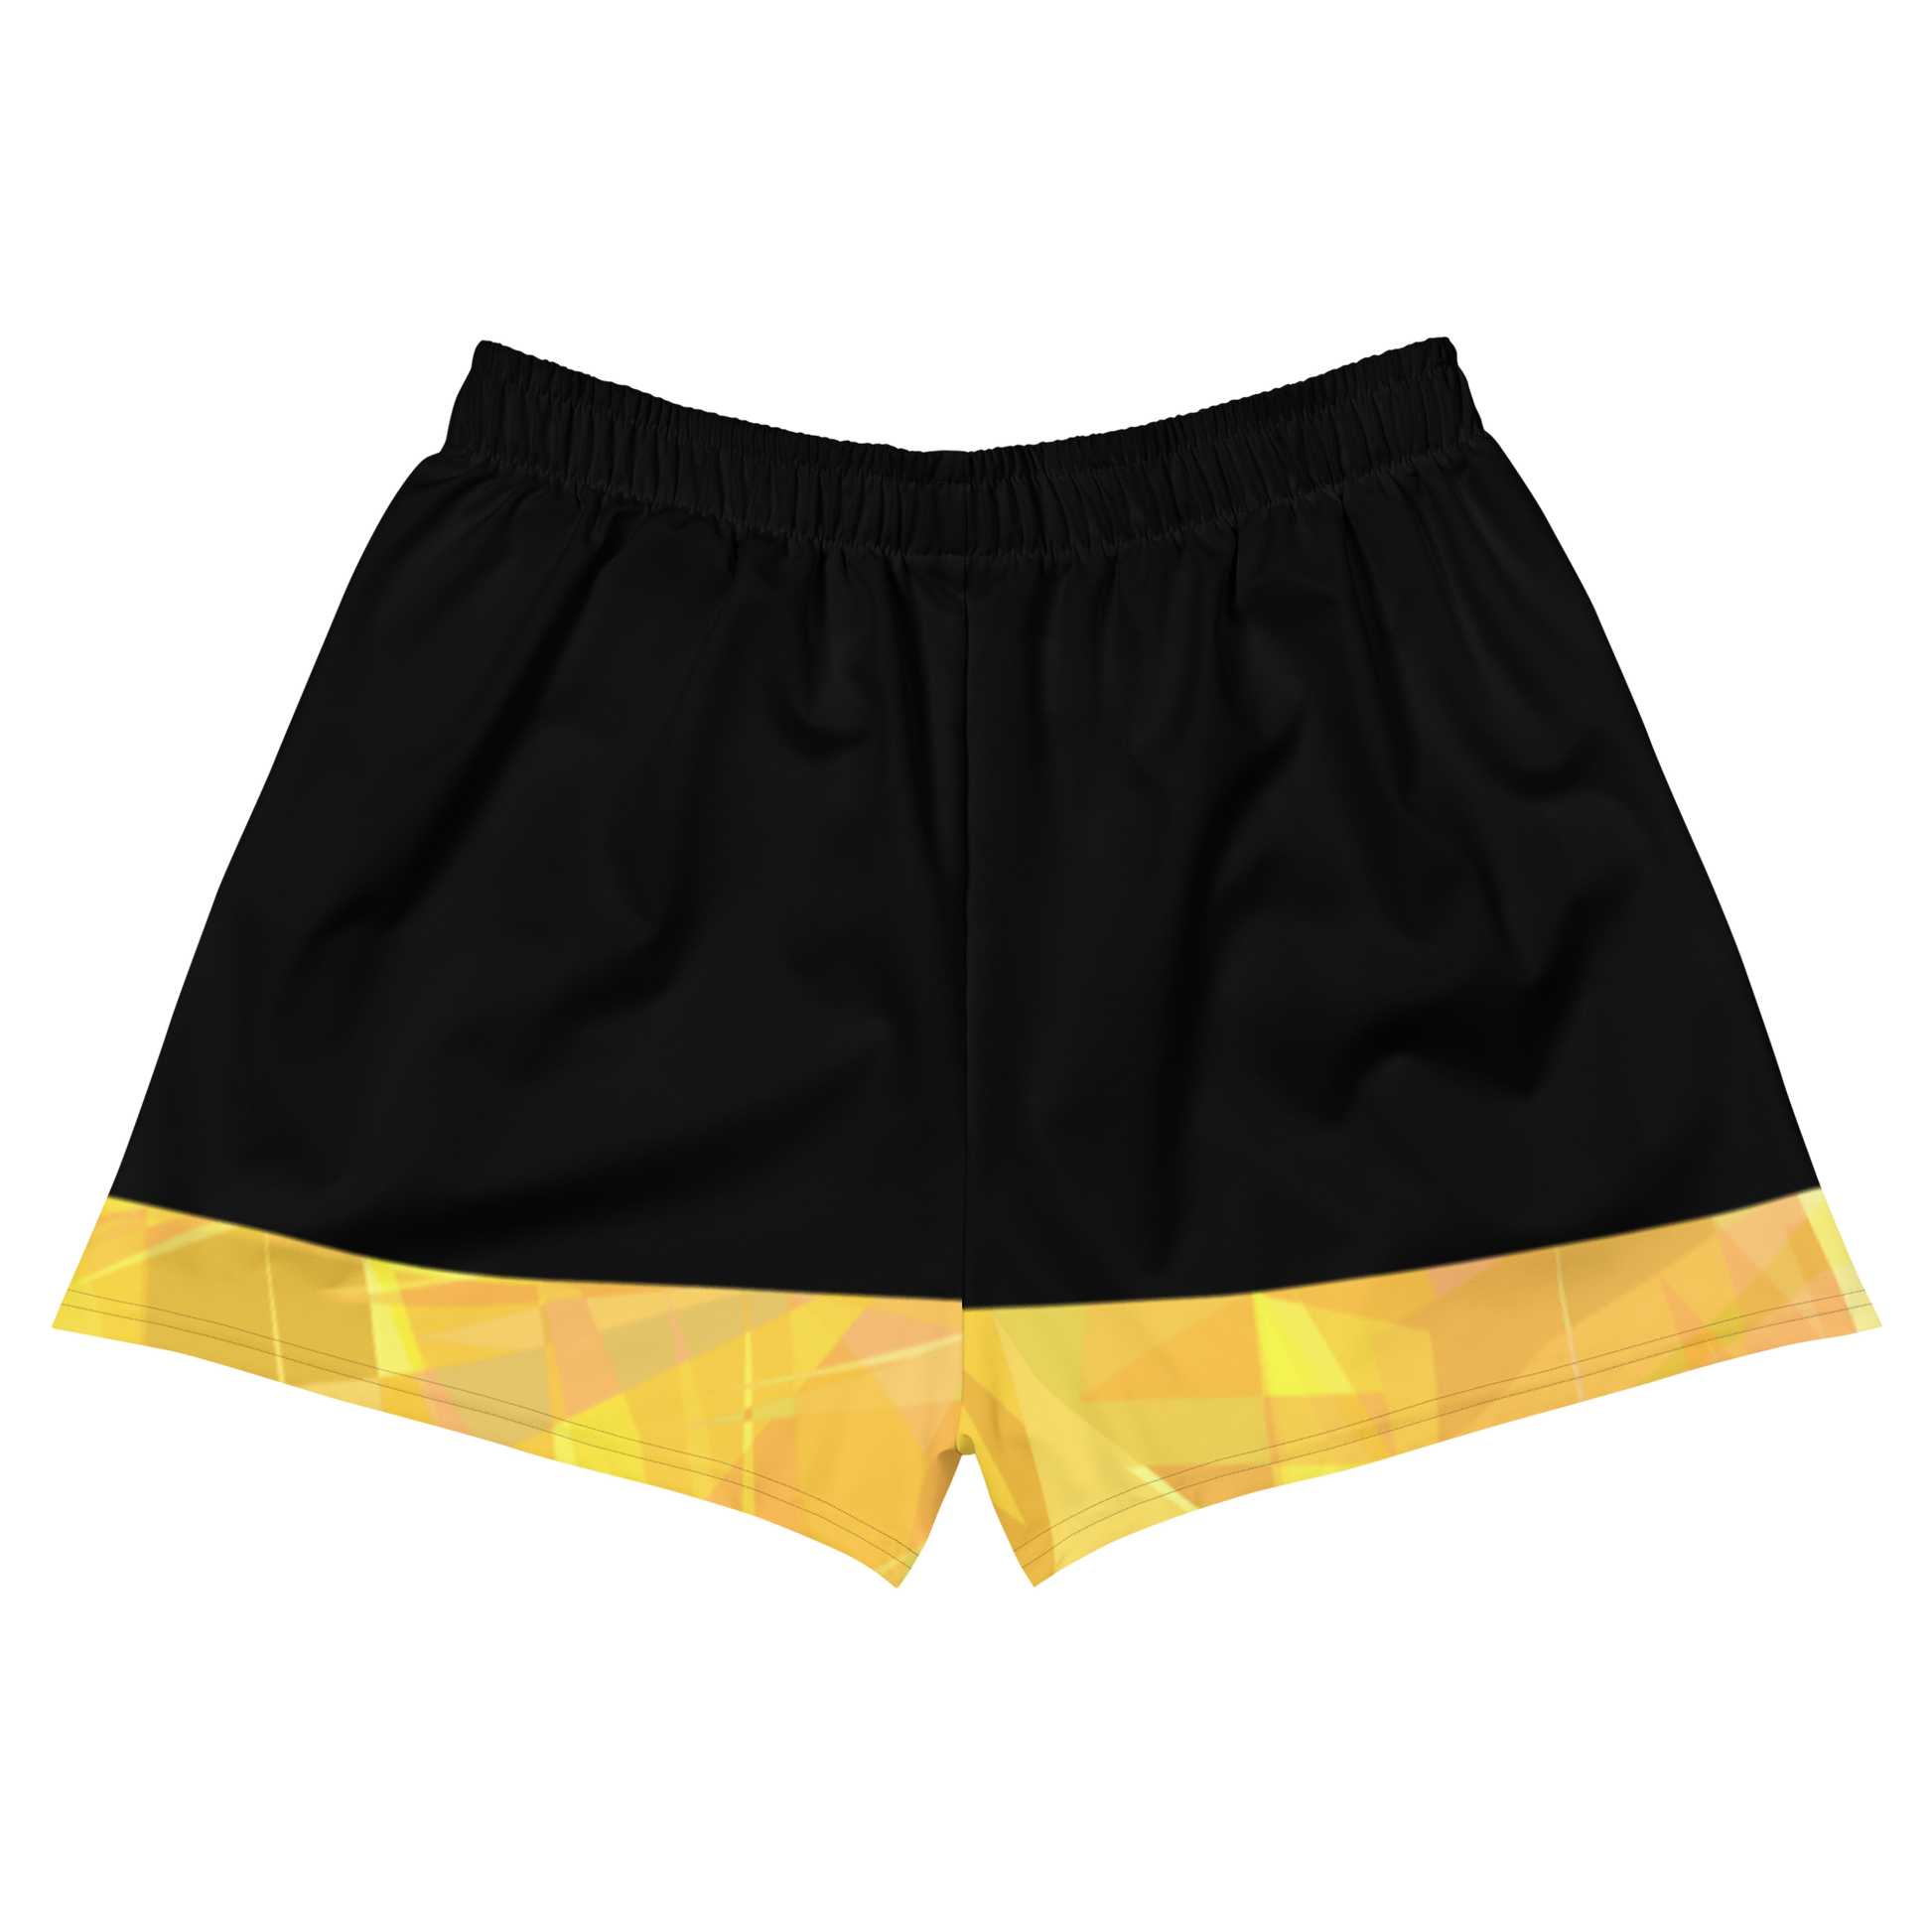 Sqdltd Starburst YWB Women's Athletic Shorts